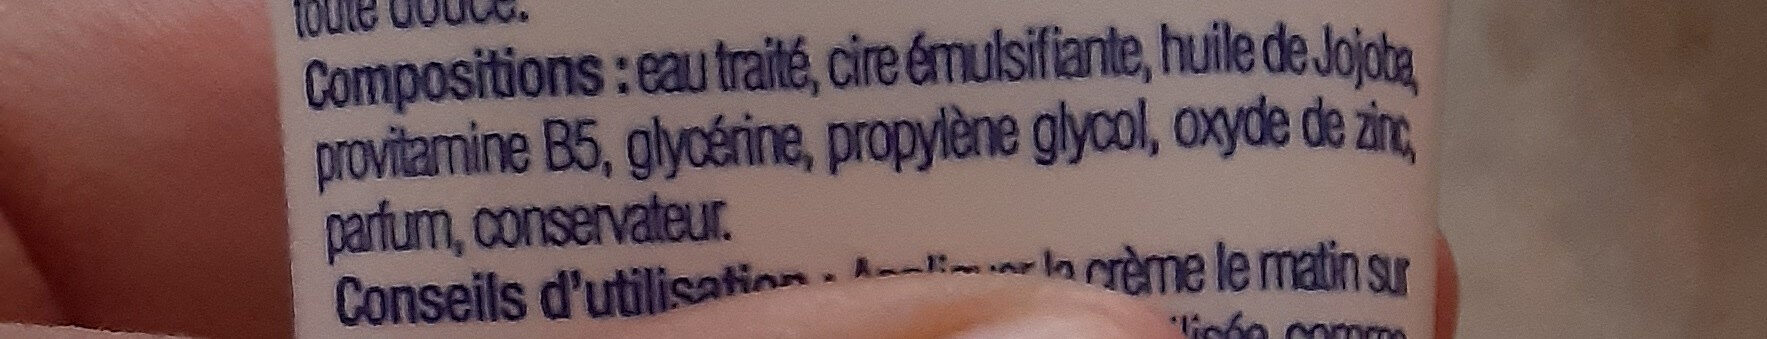 crème hydratante visage - Ingredients - fr